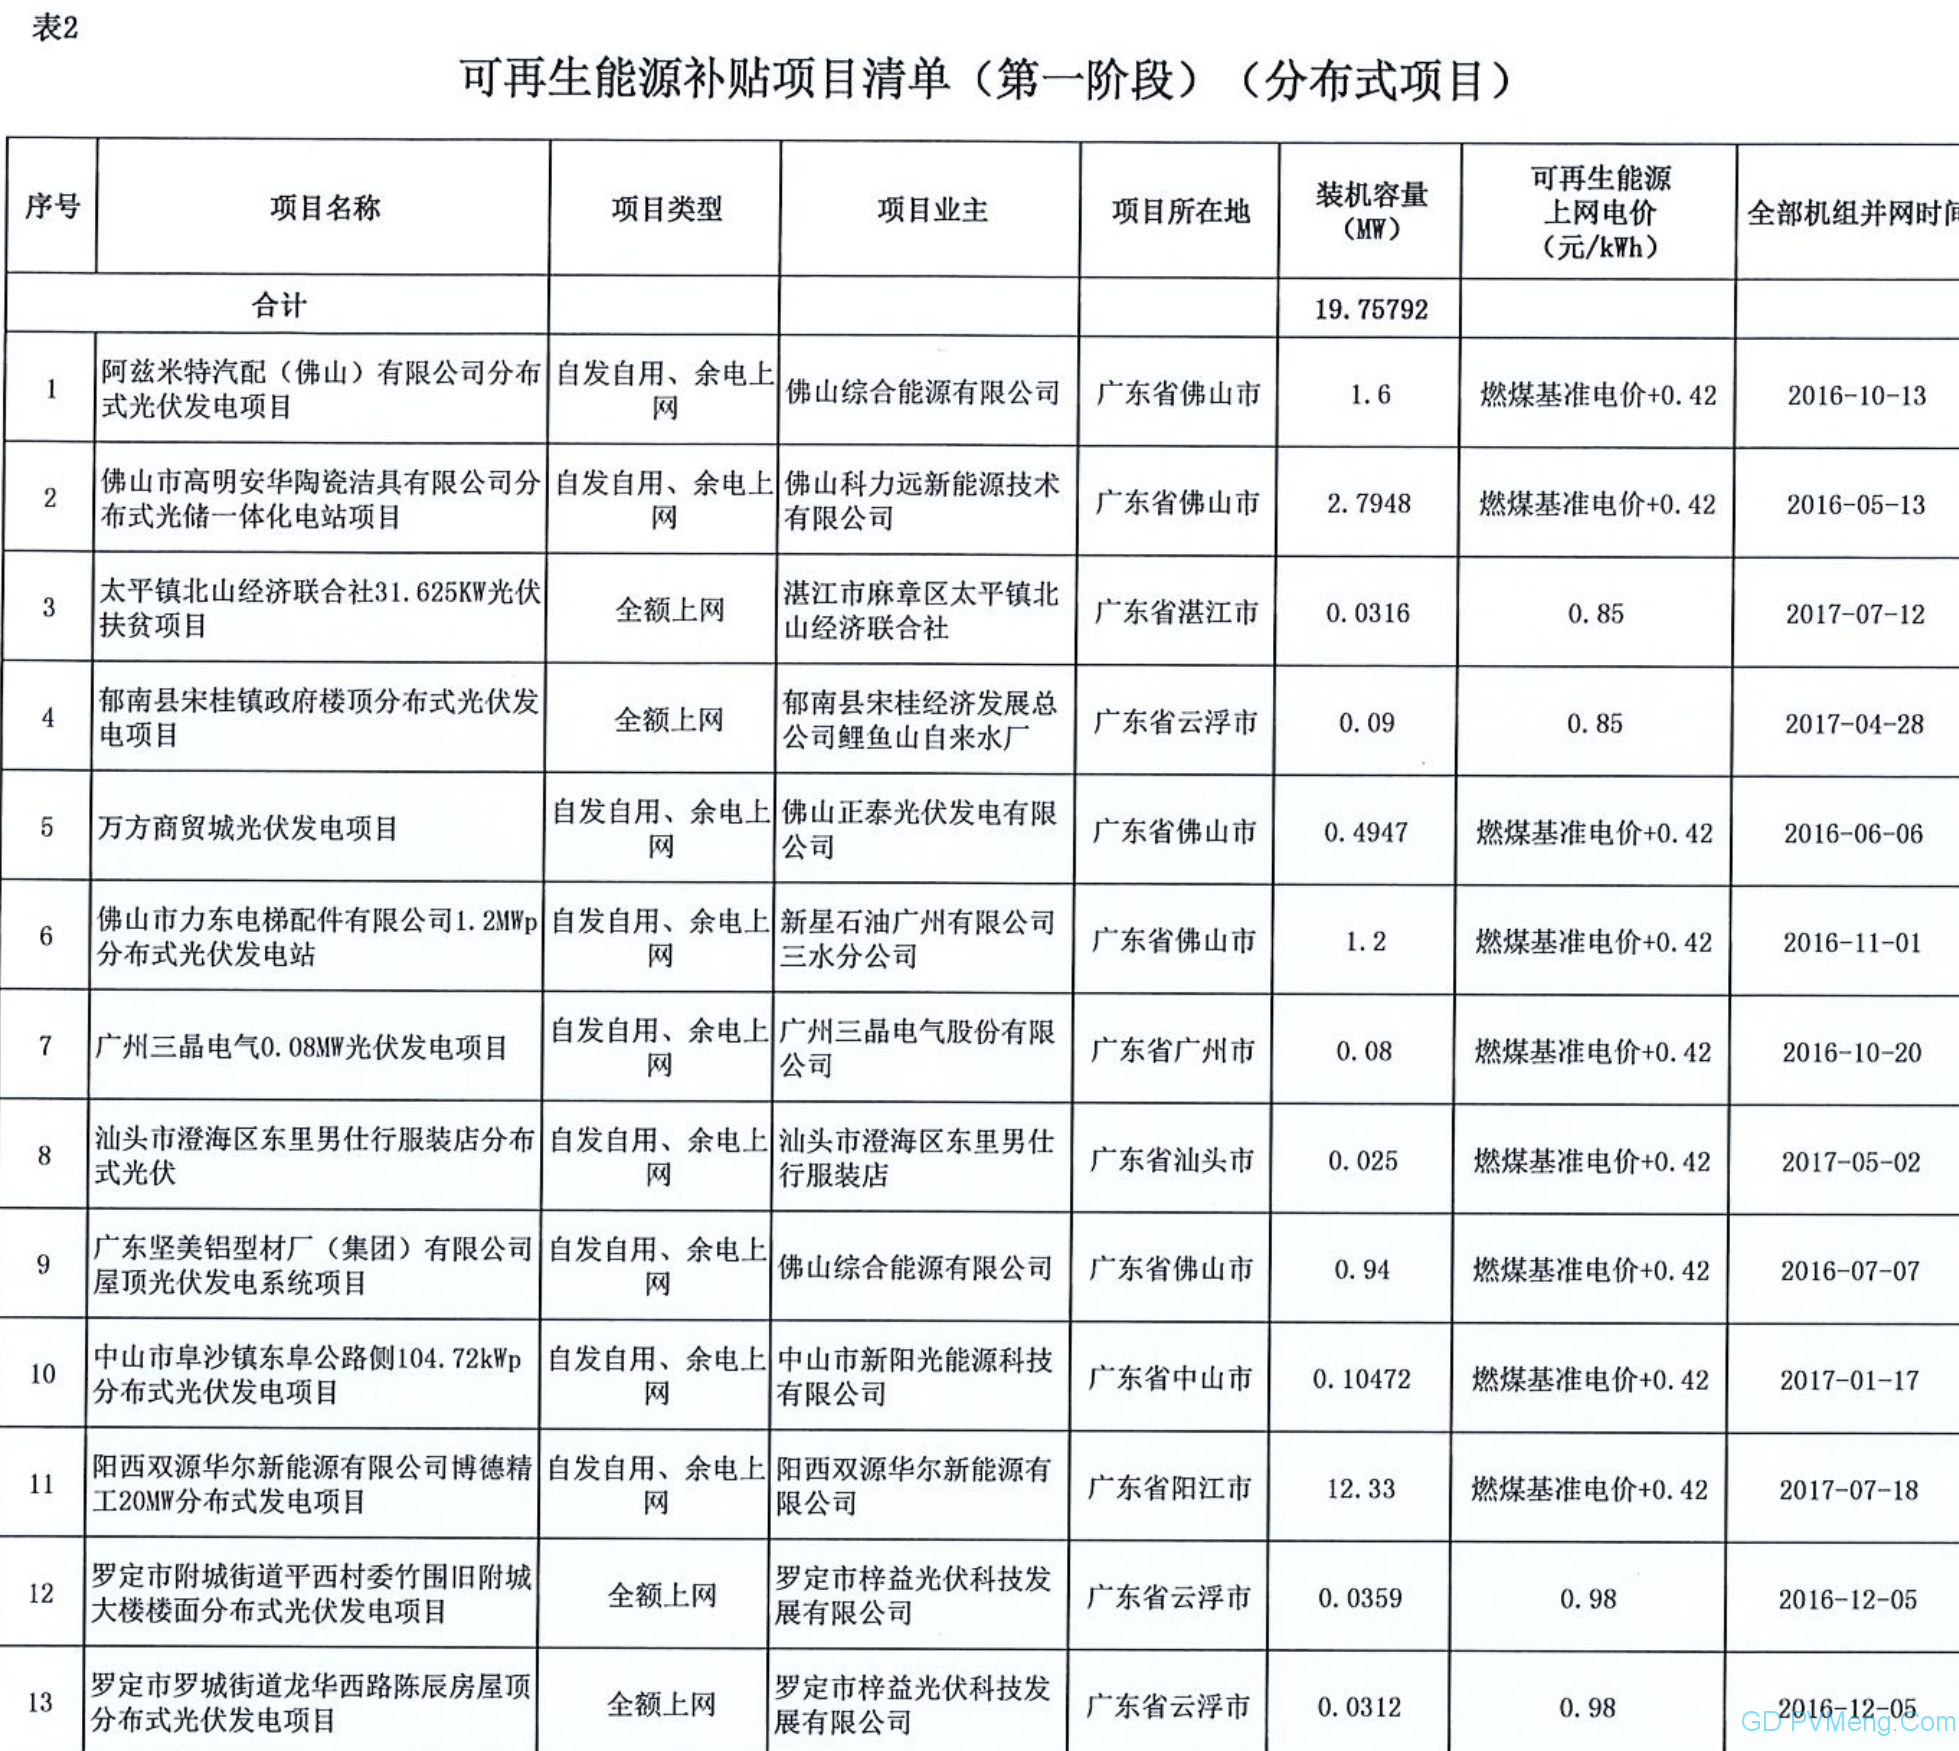 广东电网关于属地区域内拟纳入2020年可再生能源补贴项目清单（第一阶段）的公示20200429